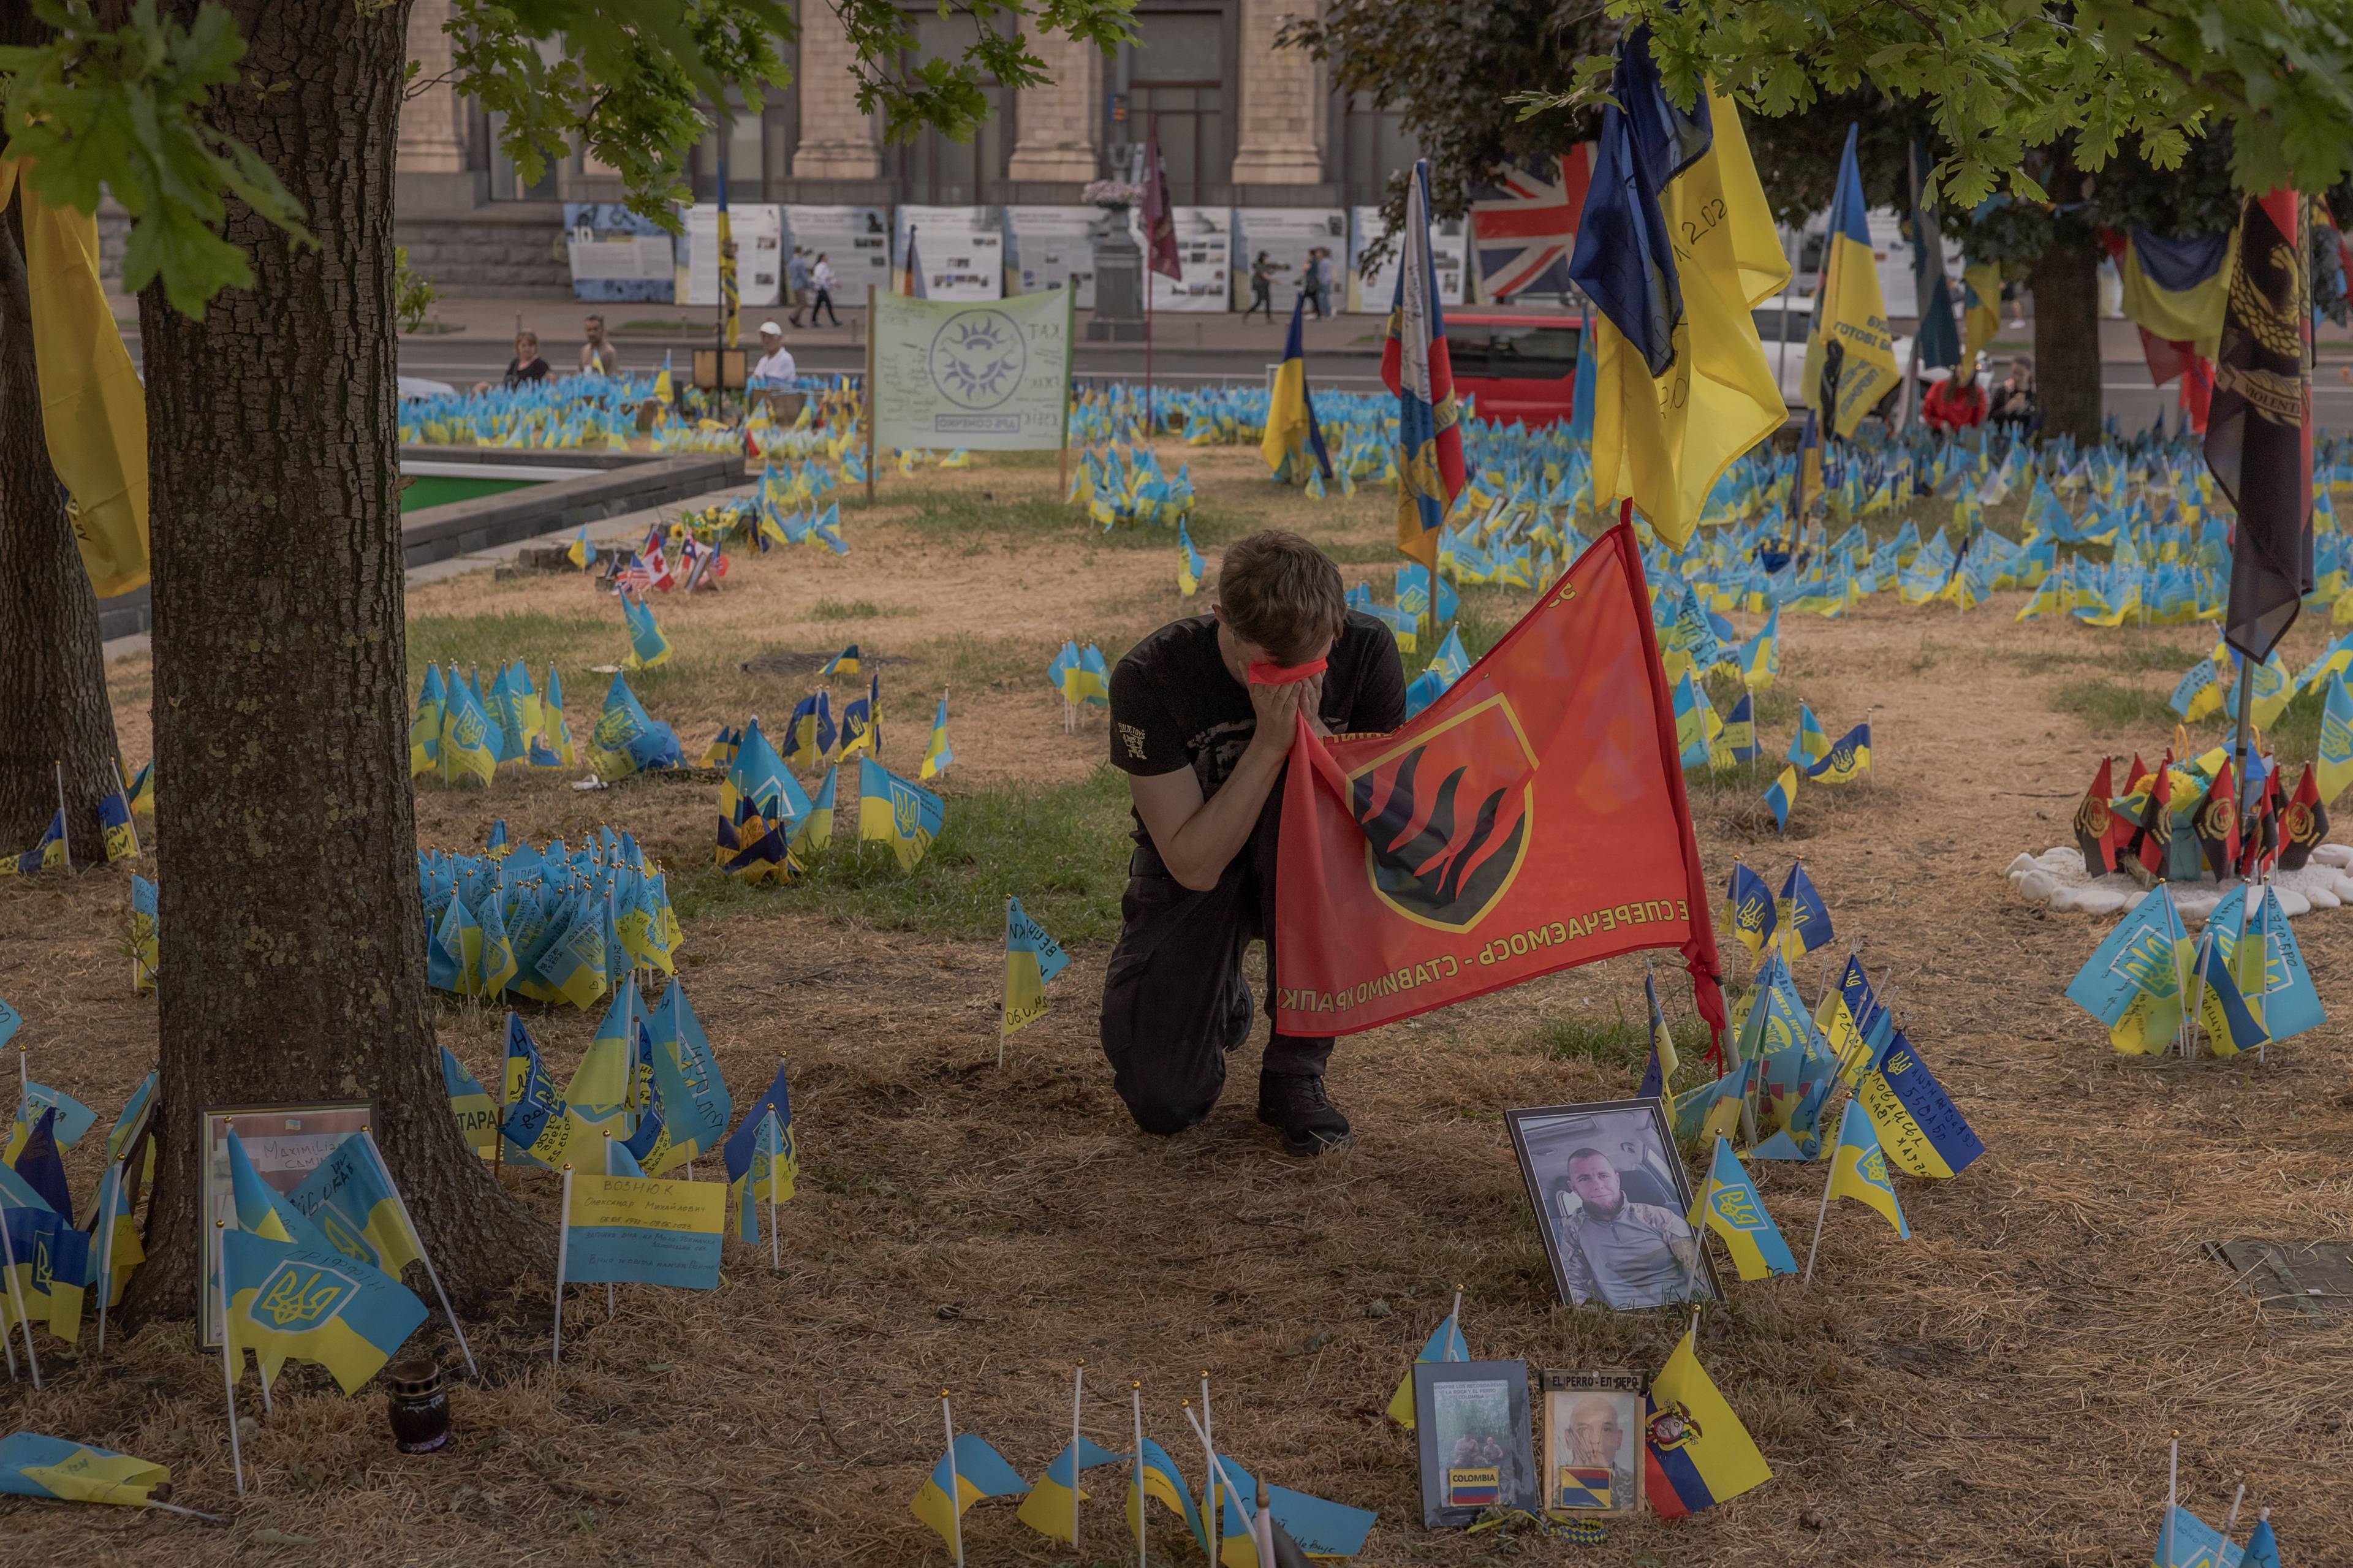 żołnierz klęczy i całuje flagę brygady pośród zatkniętych w ziemię flag ukraińskich